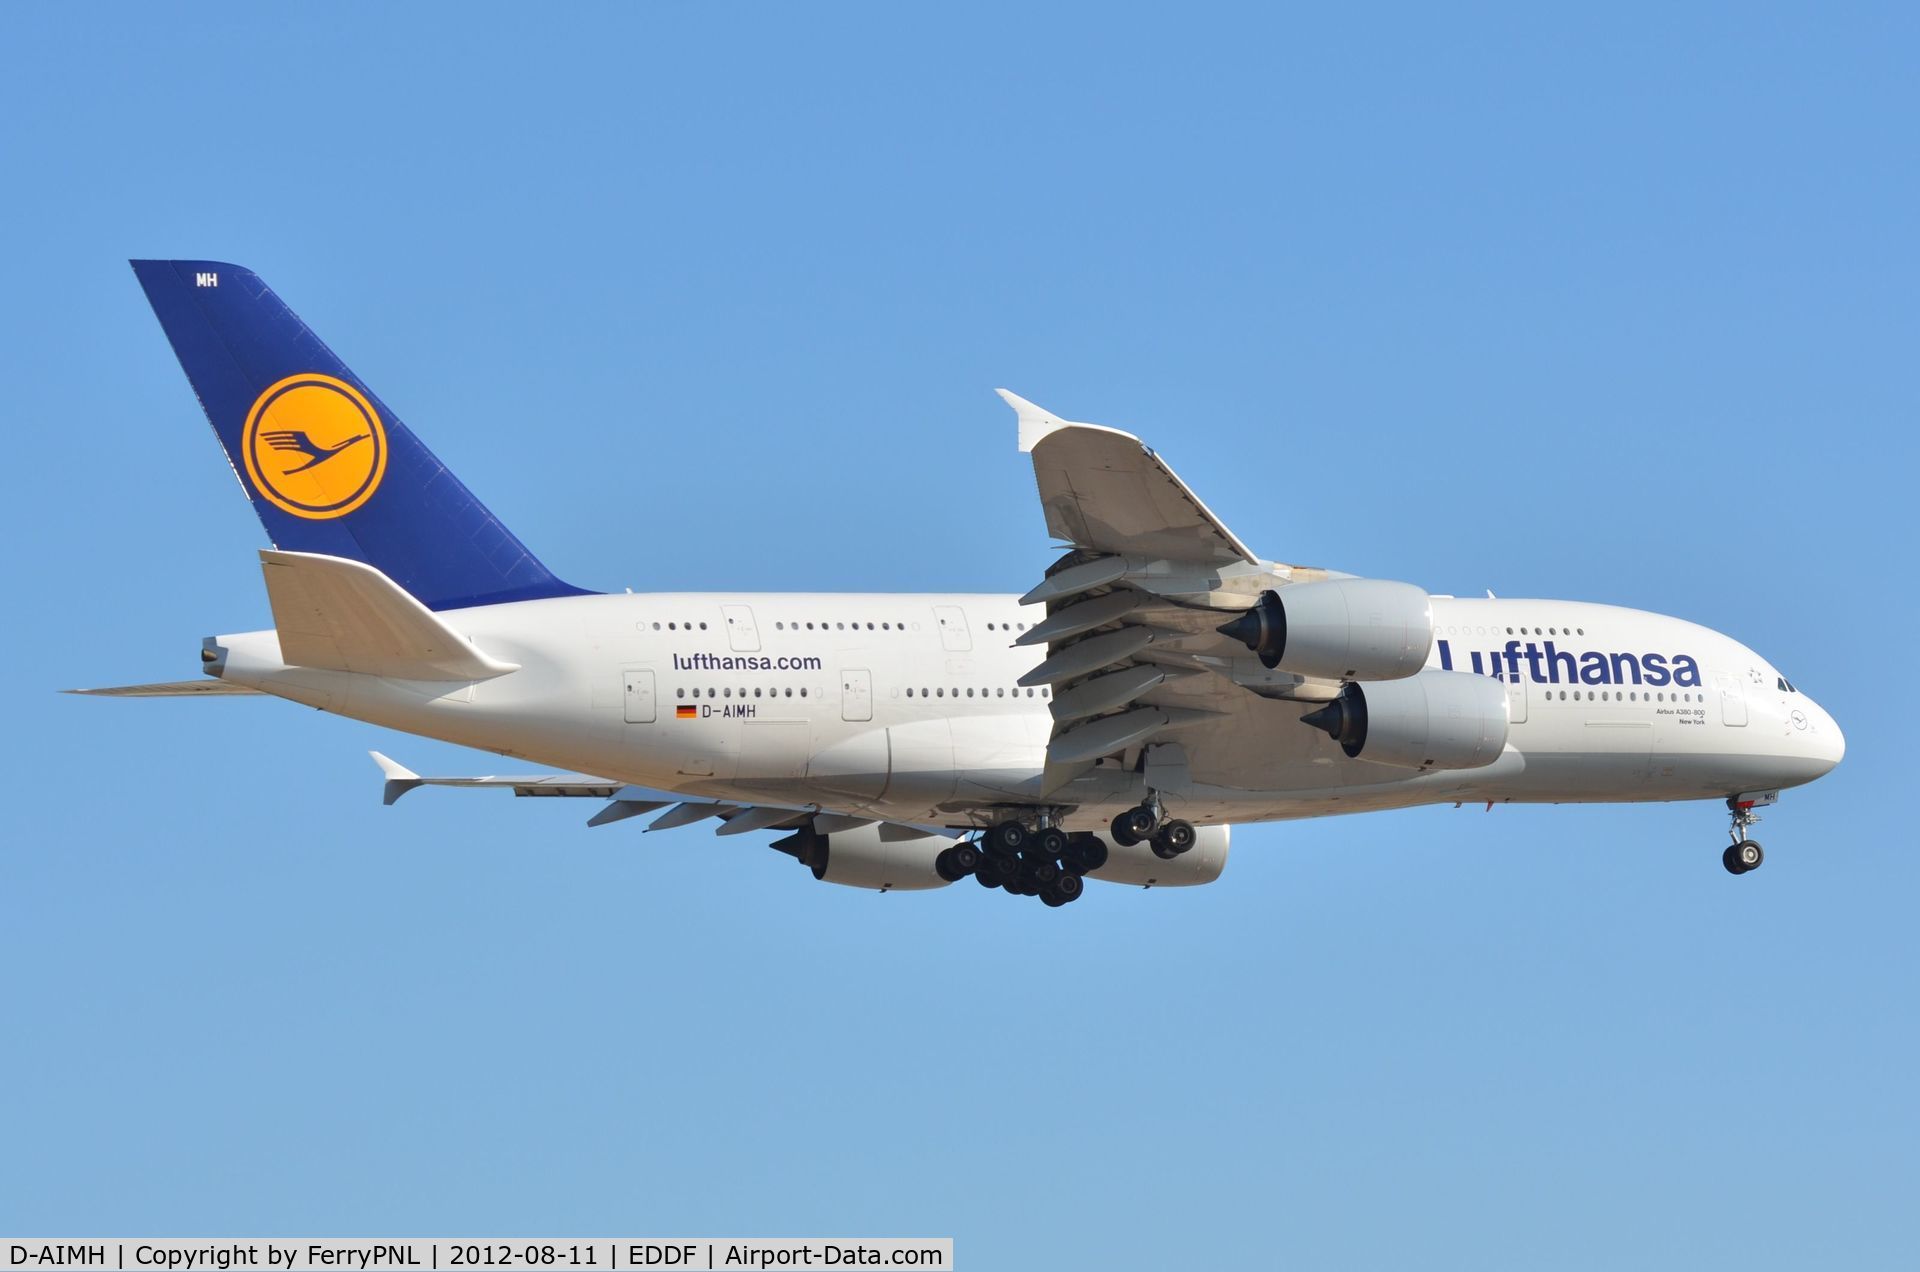 D-AIMH, 2010 Airbus A380-841 C/N 070, LH A388